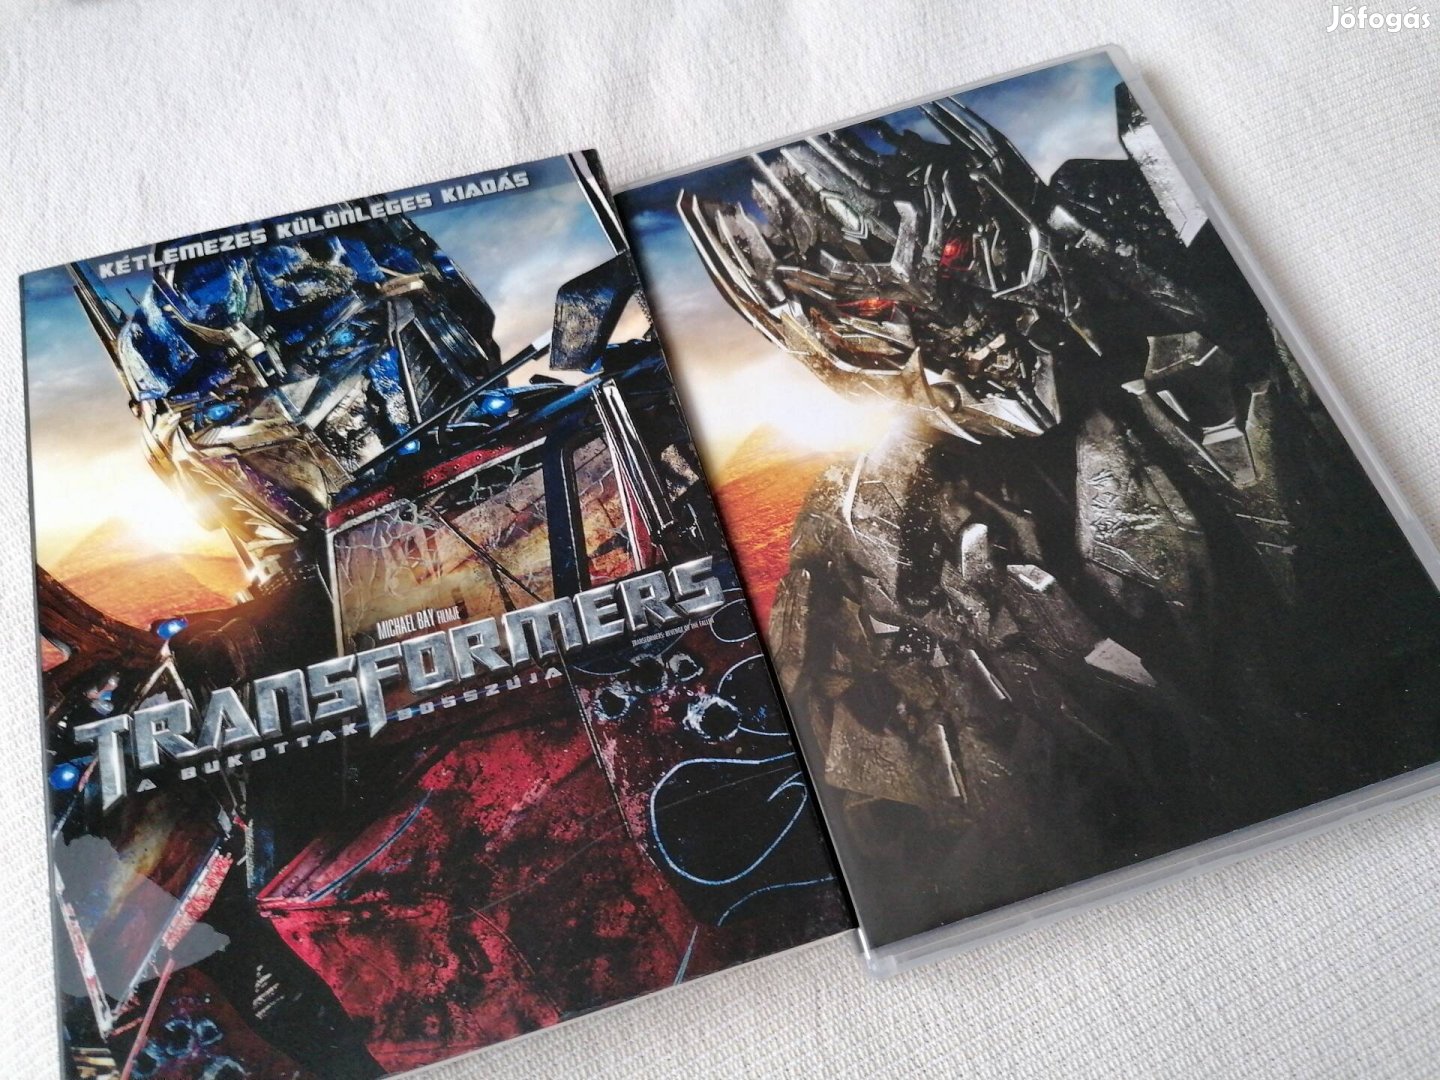 Transformers - A bukottak bosszúja kétlemezes dvd